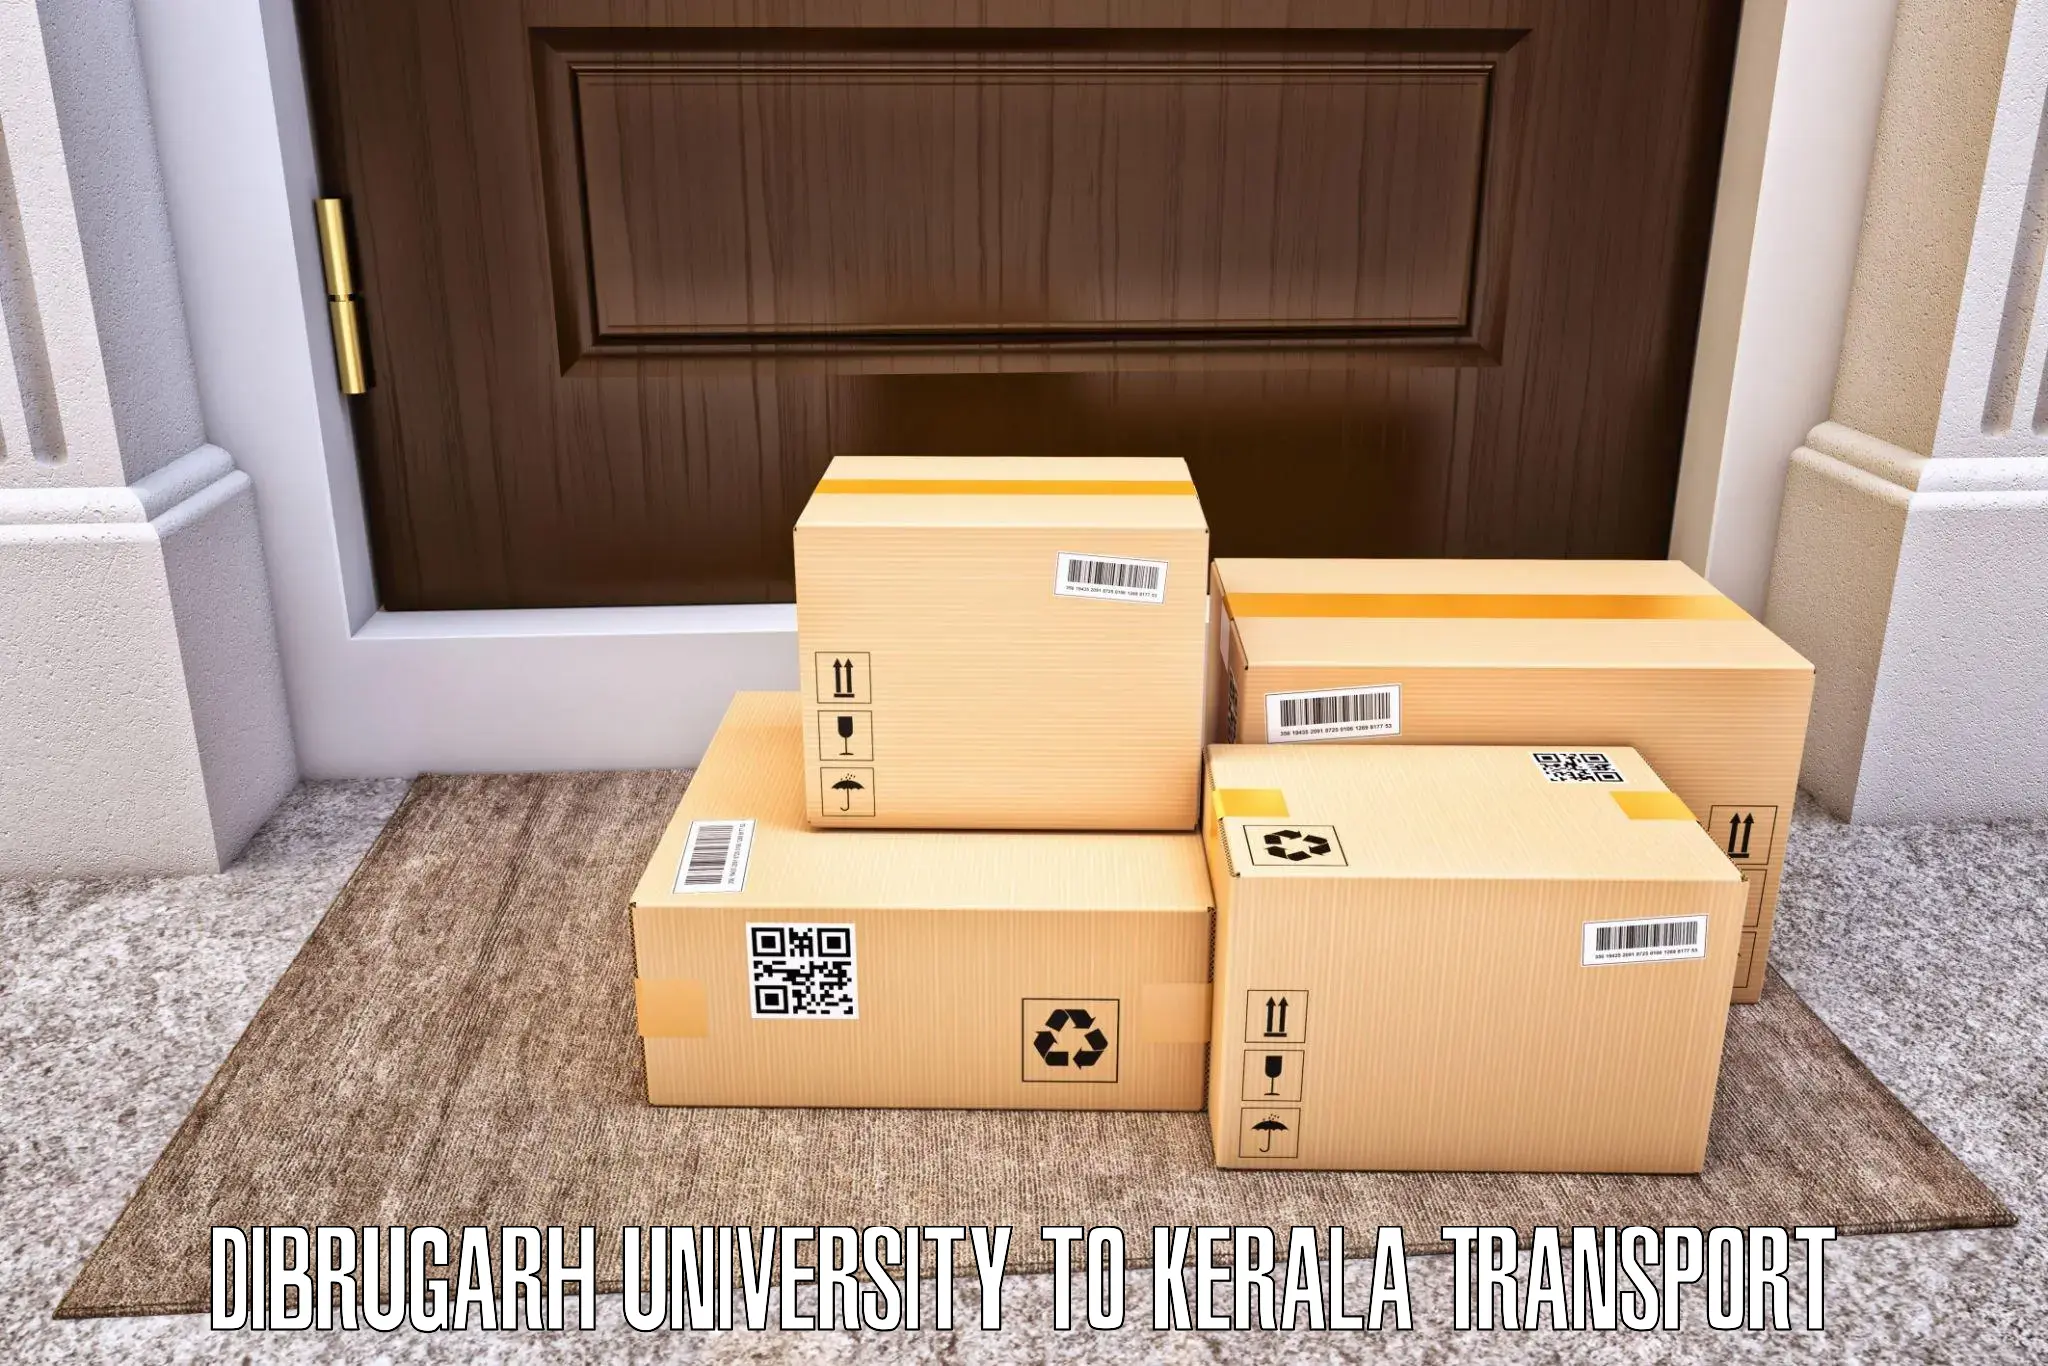 Bike transfer in Dibrugarh University to Kerala